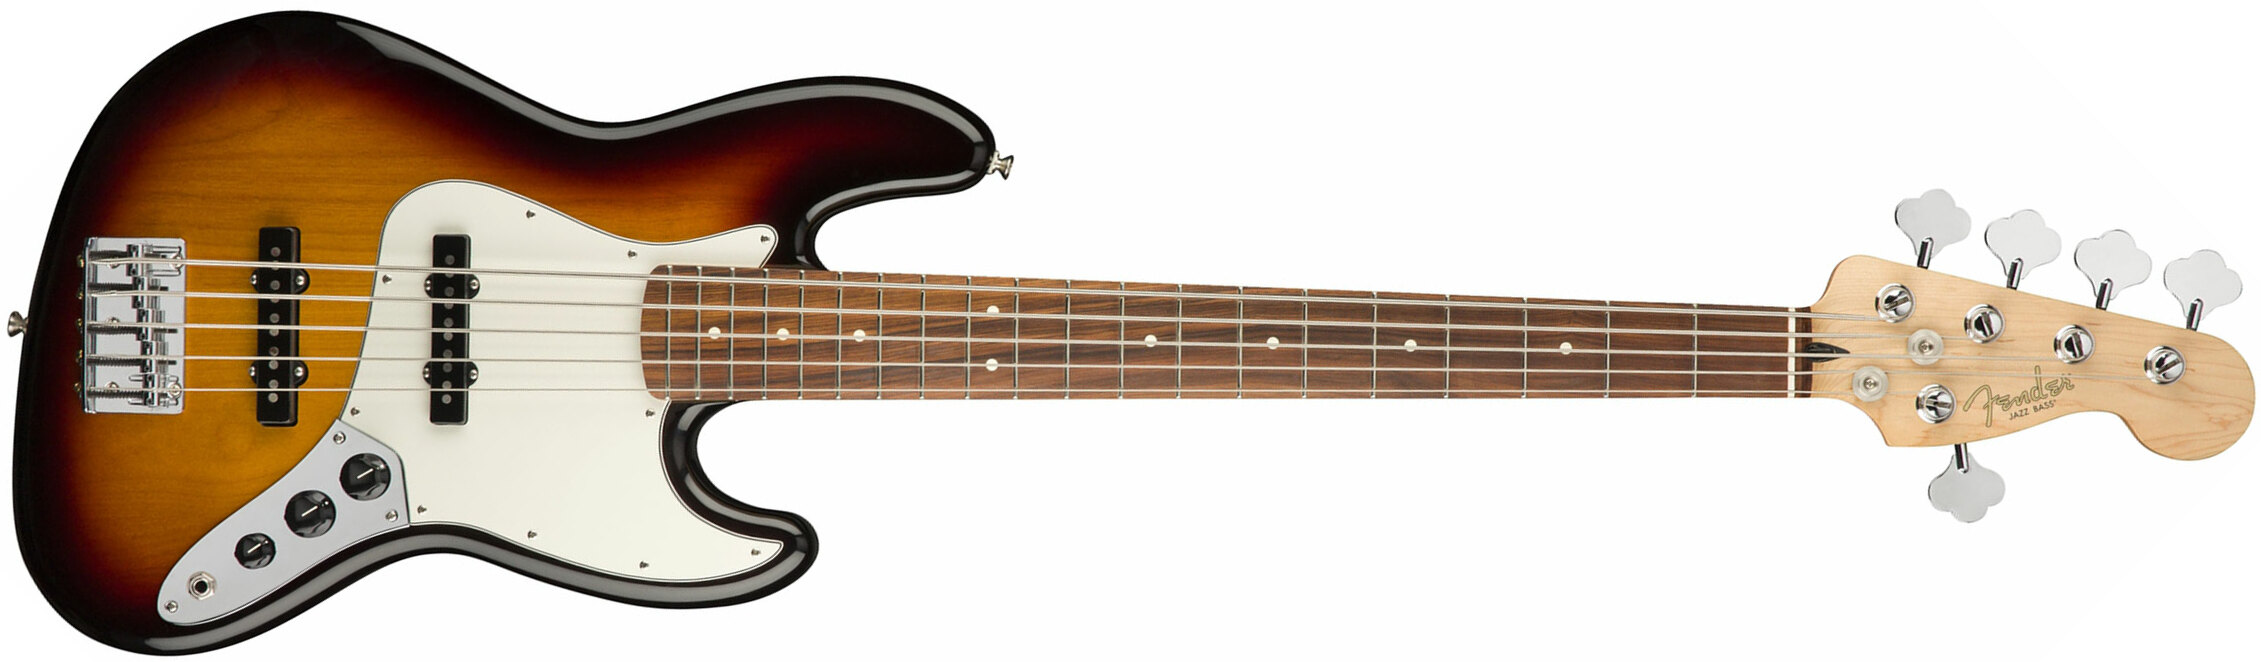 Fender Jazz Bass Player V 5-cordes Mex Pf - 3-color Sunburst - Basse Électrique Solid Body - Main picture